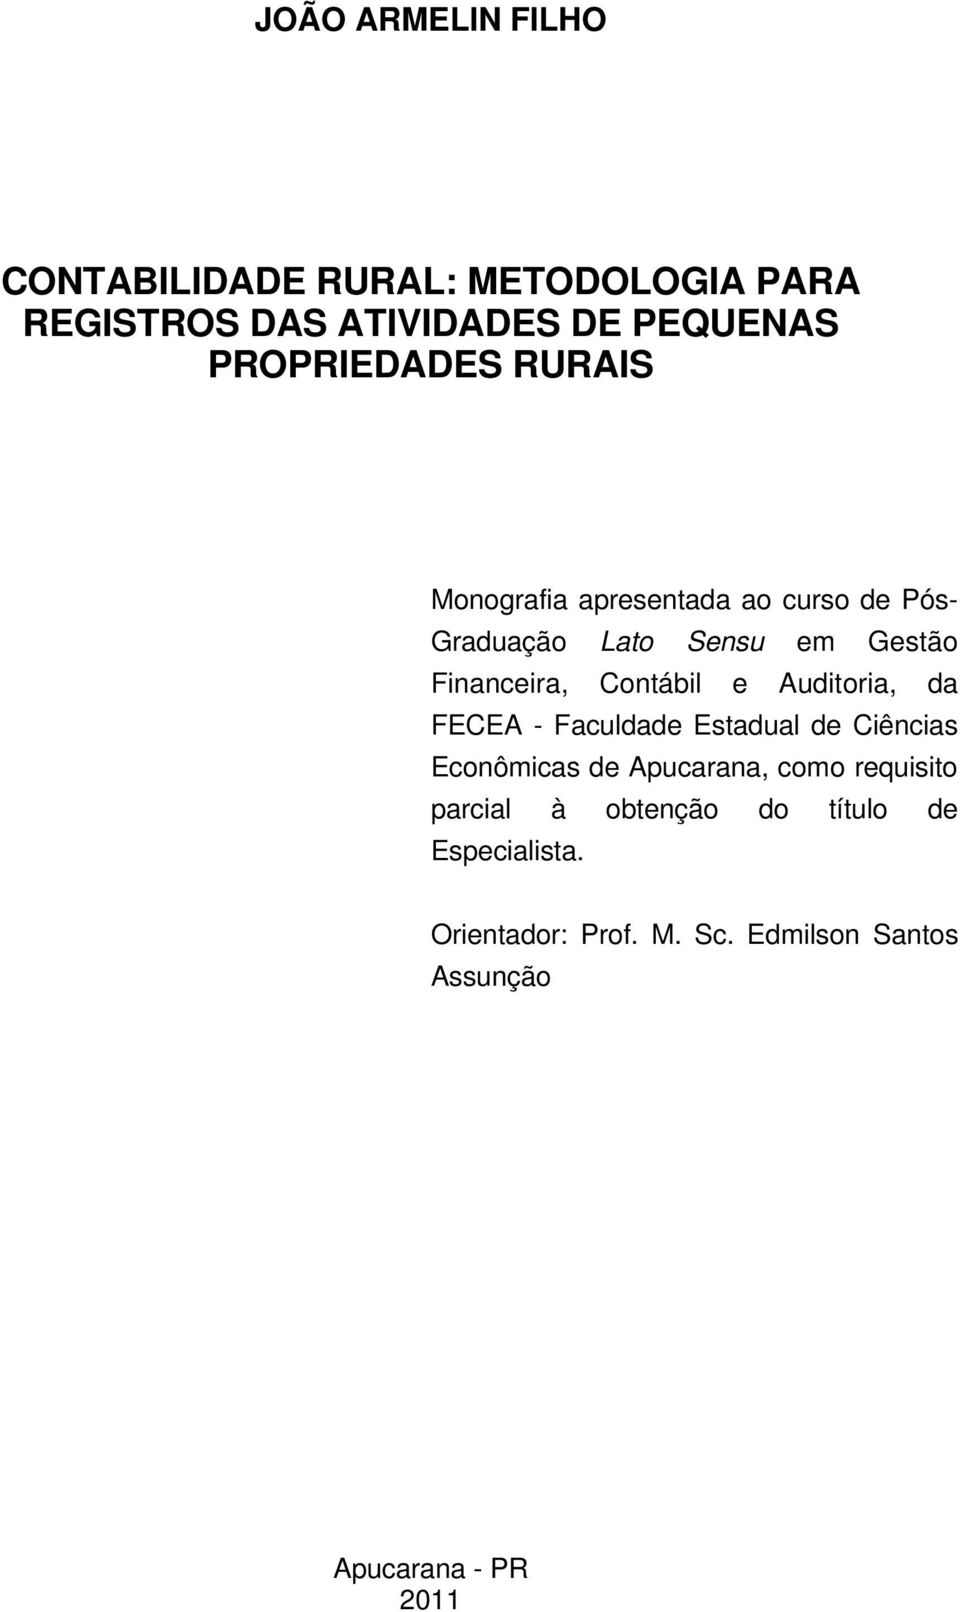 Contábil e Auditoria, da FECEA - Faculdade Estadual de Ciências Econômicas de Apucarana, como requisito